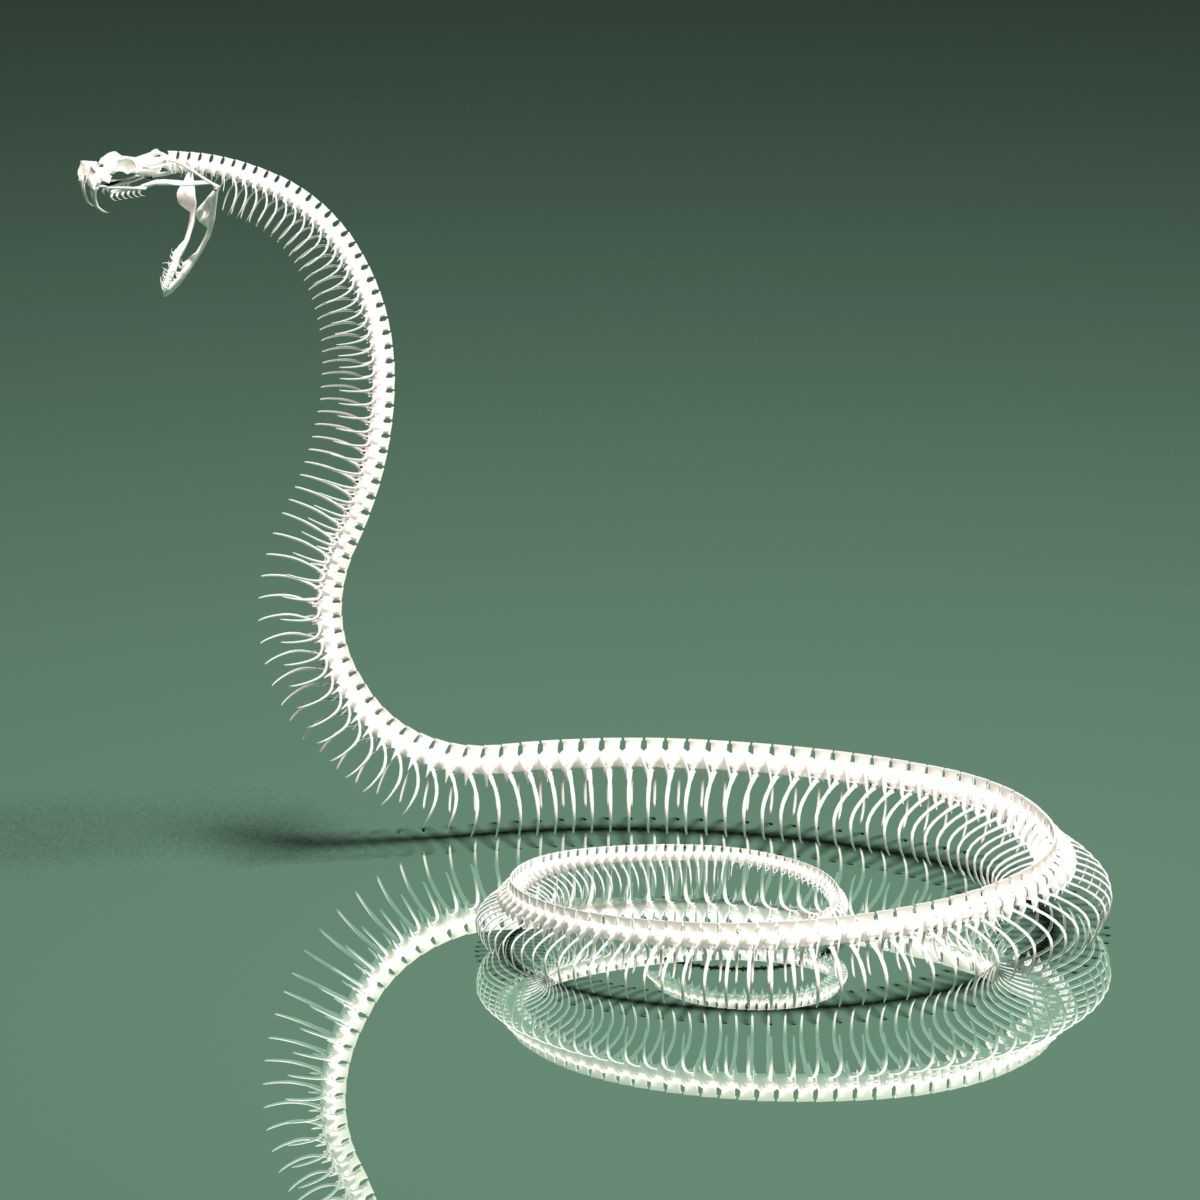 Скелет змеи: строение, как выглядит, фото - самое интересное